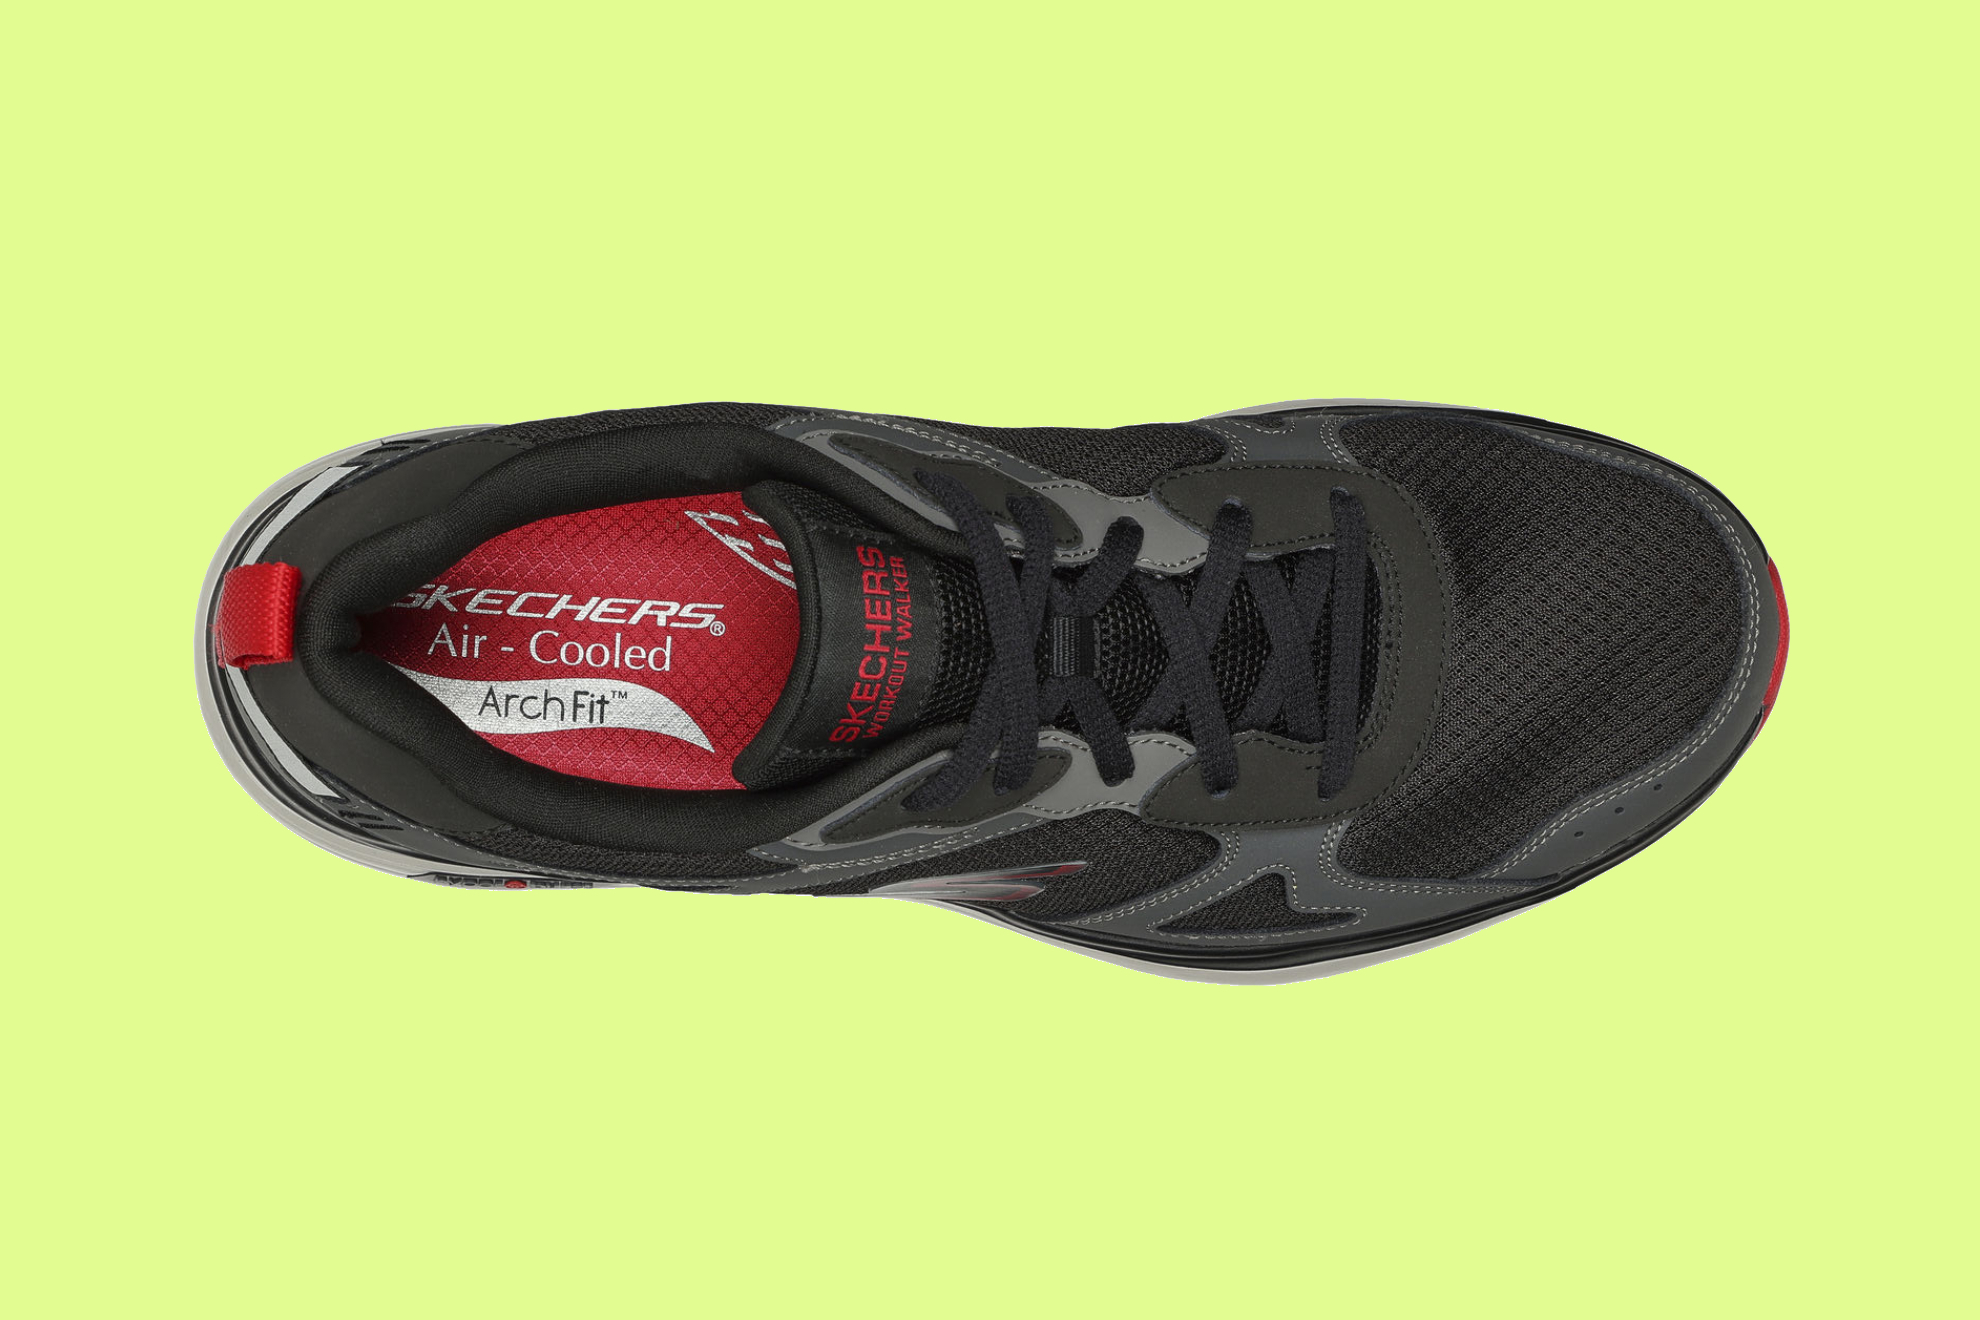 Probamos las nuevas Skechers Go Walk Workout Walker: de zapatillas especialmente diseñadas para andar me curaron lesión de tobillo |